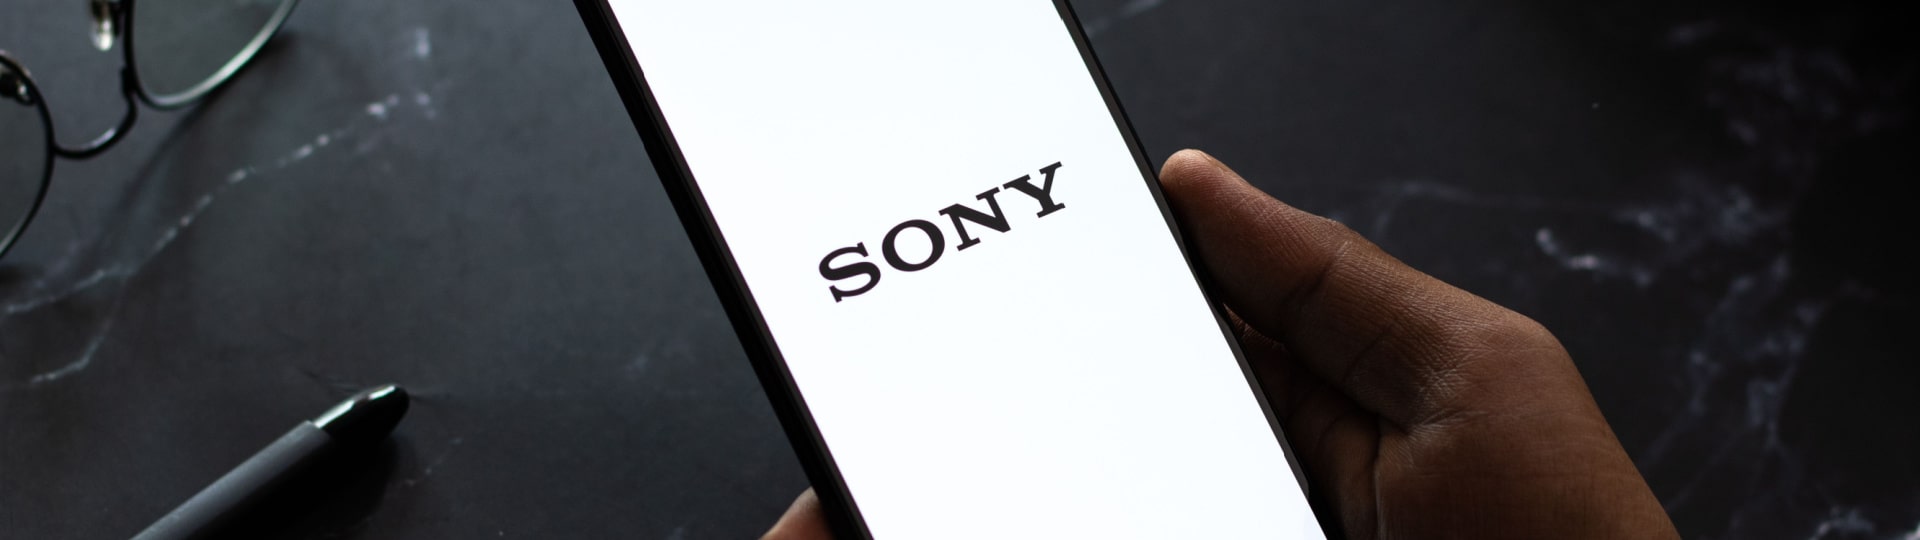 Výrobce elektroniky Sony má nižší čtvrtletní zisk